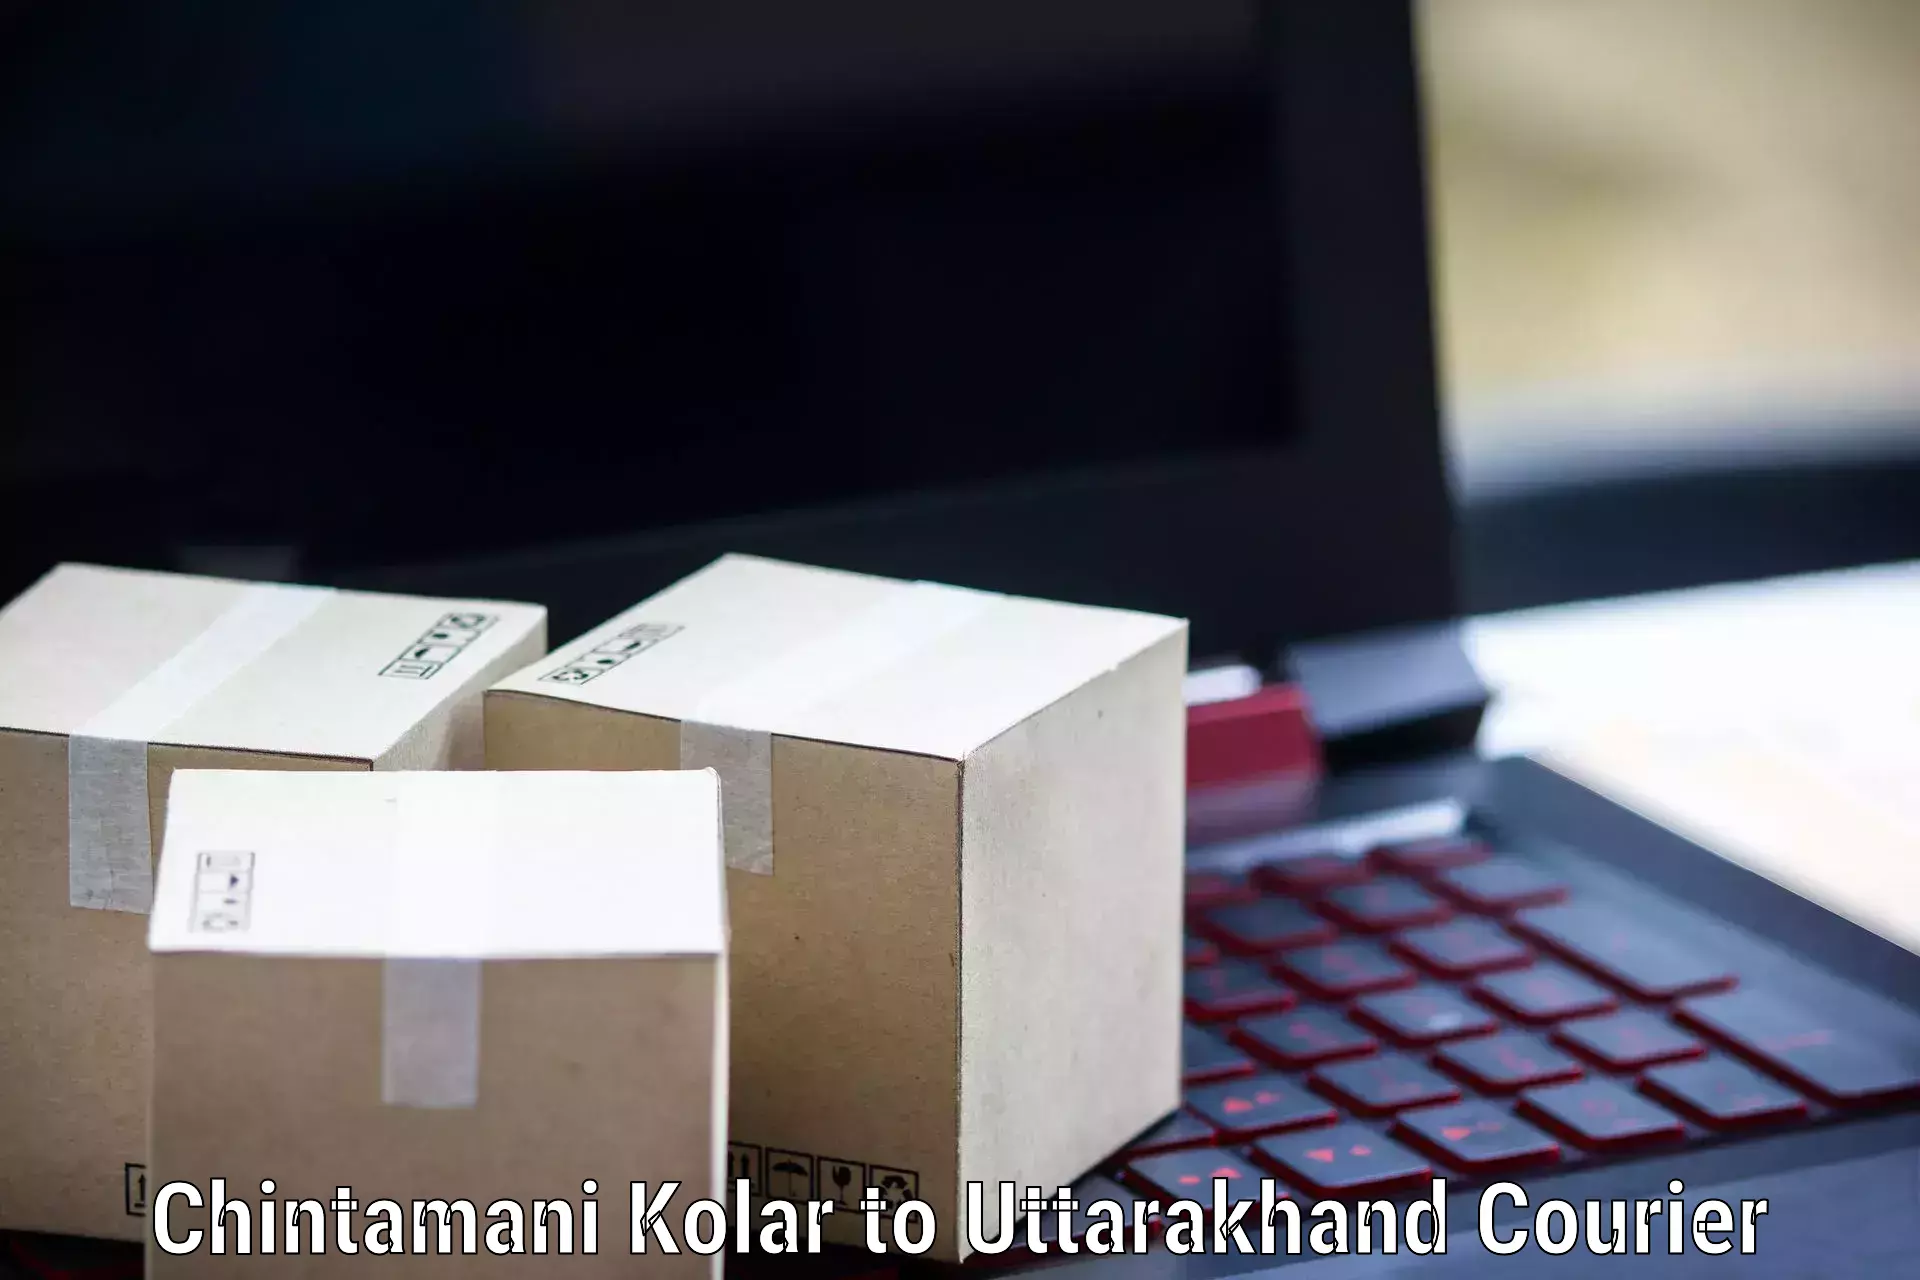 Global courier networks Chintamani Kolar to Dwarahat